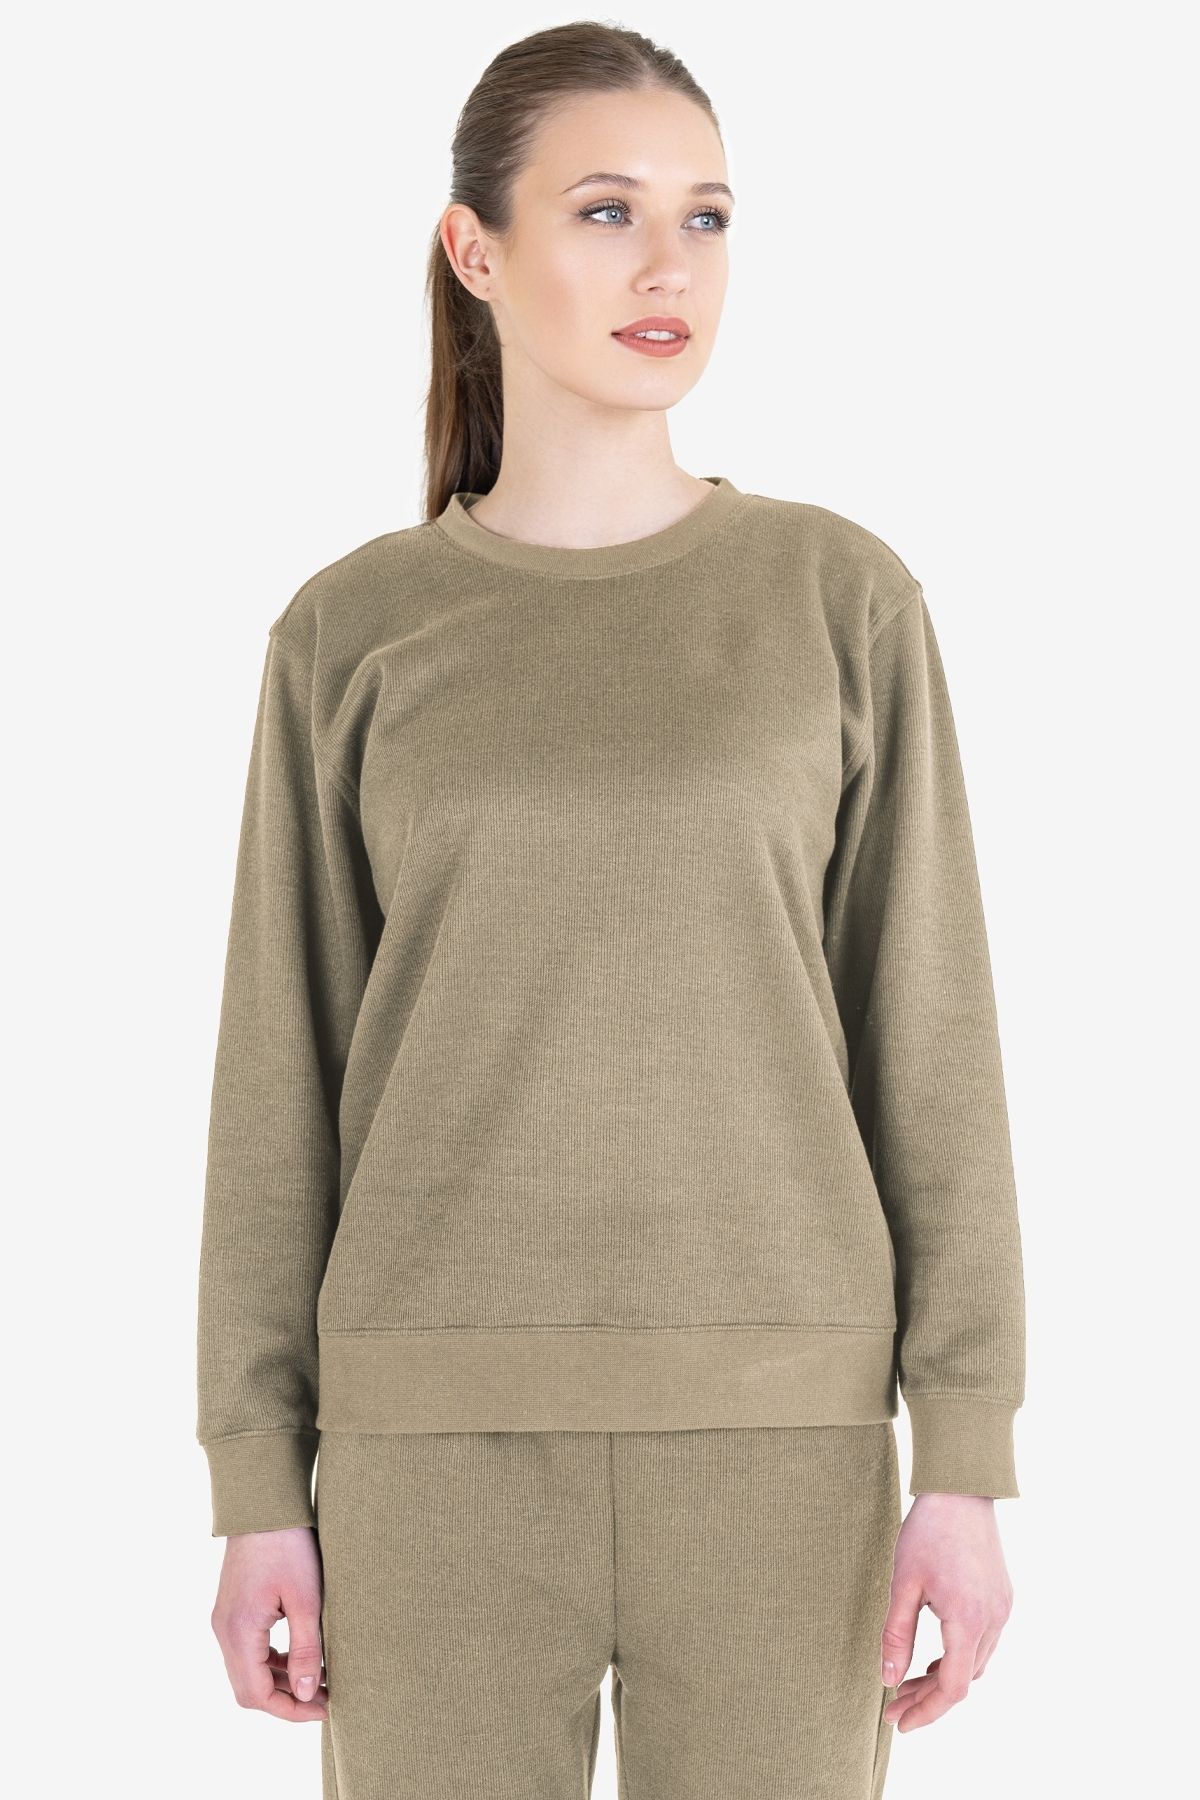 Lescon Kadın Sweatshirt 23n-2217